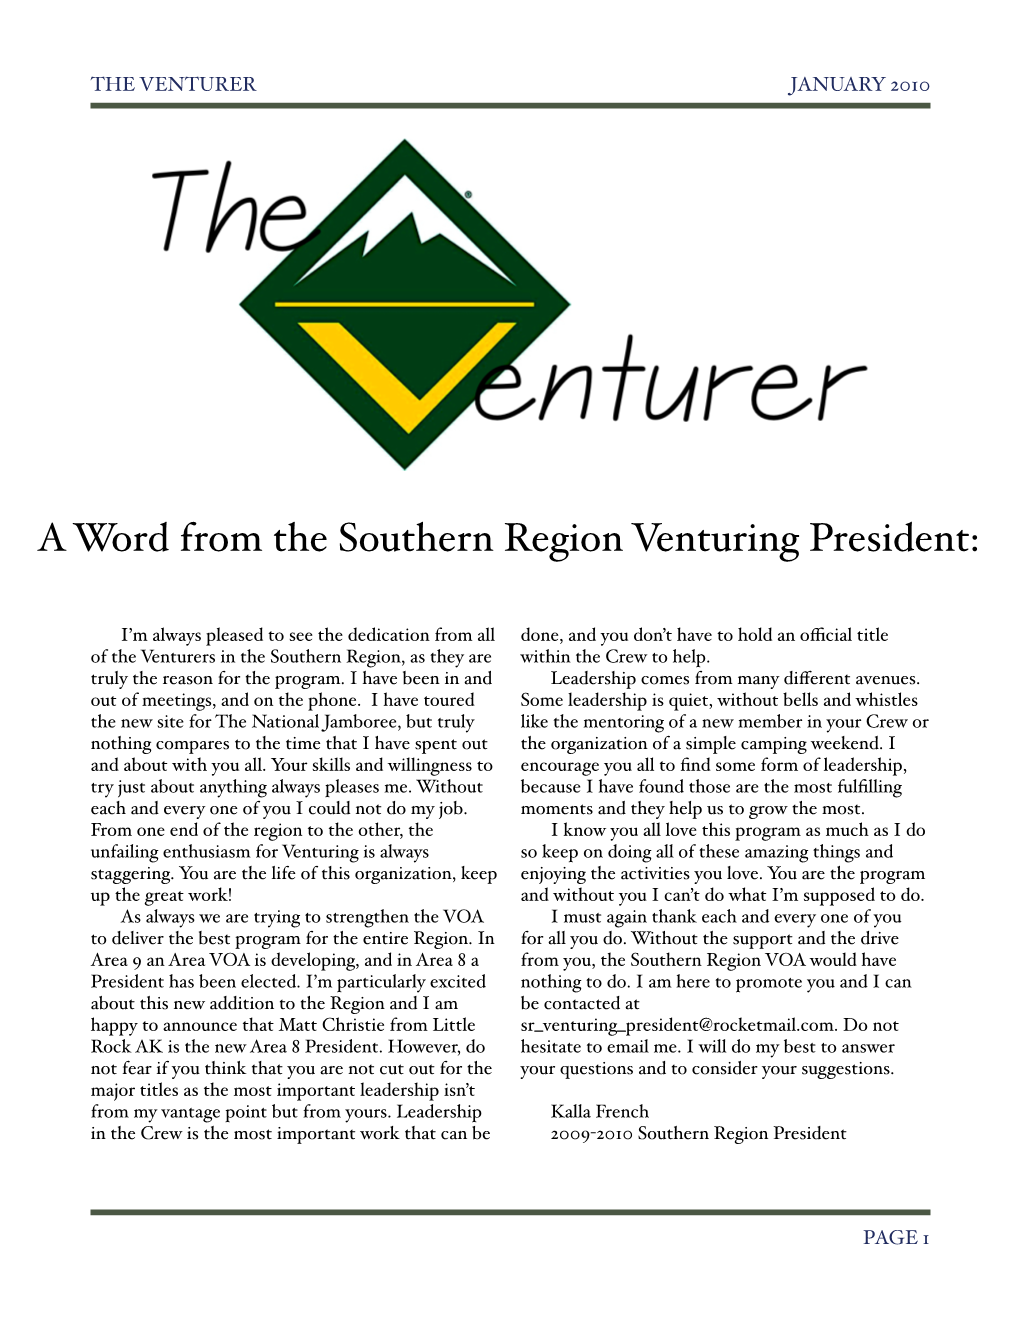 Southern Region Newsletter Jan 2010